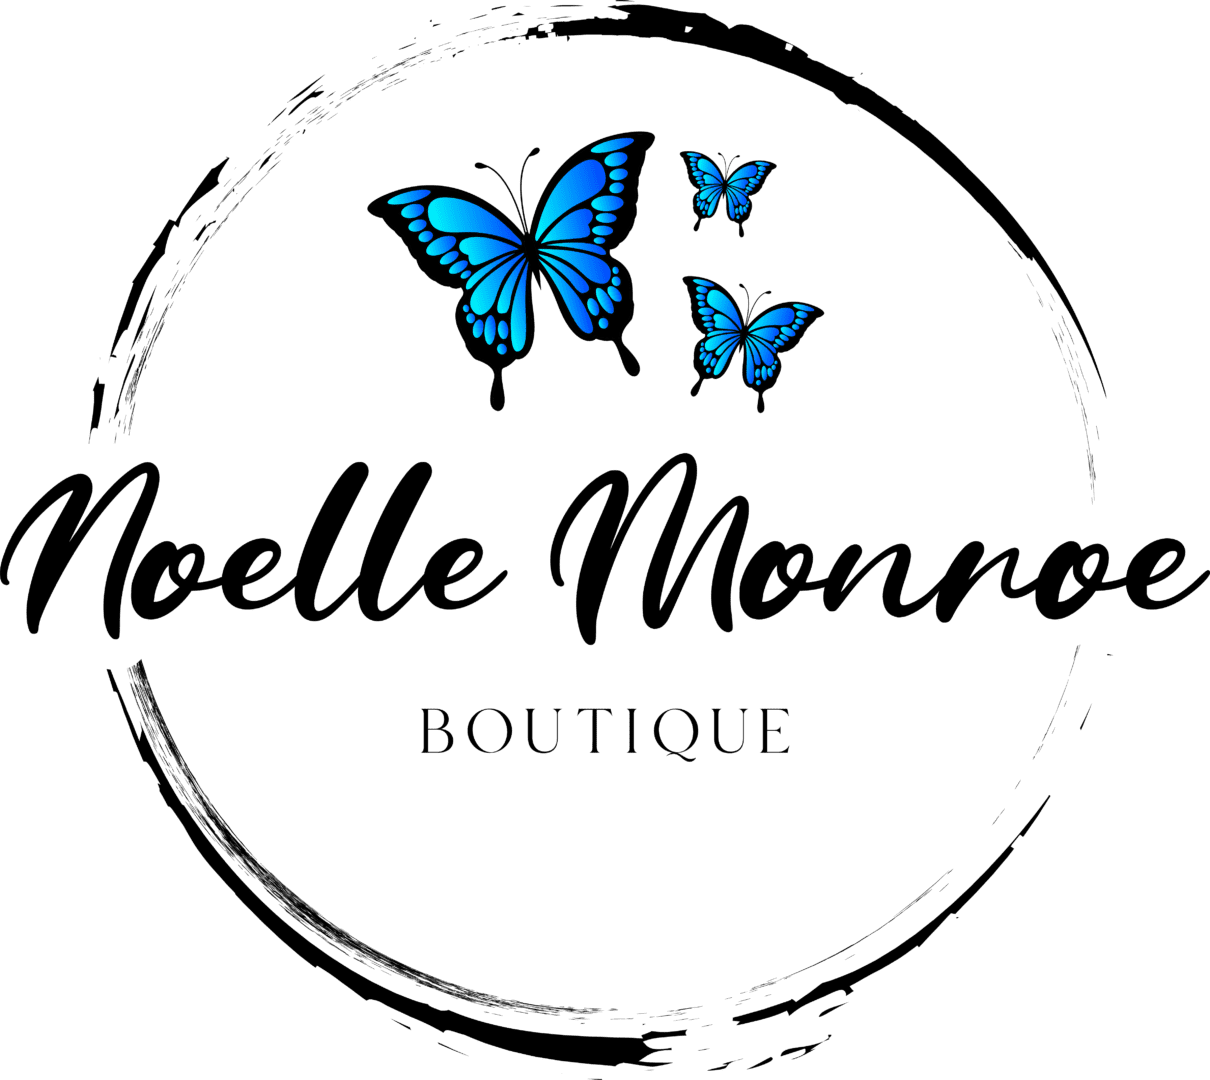 Noelle Monroe Boutique.